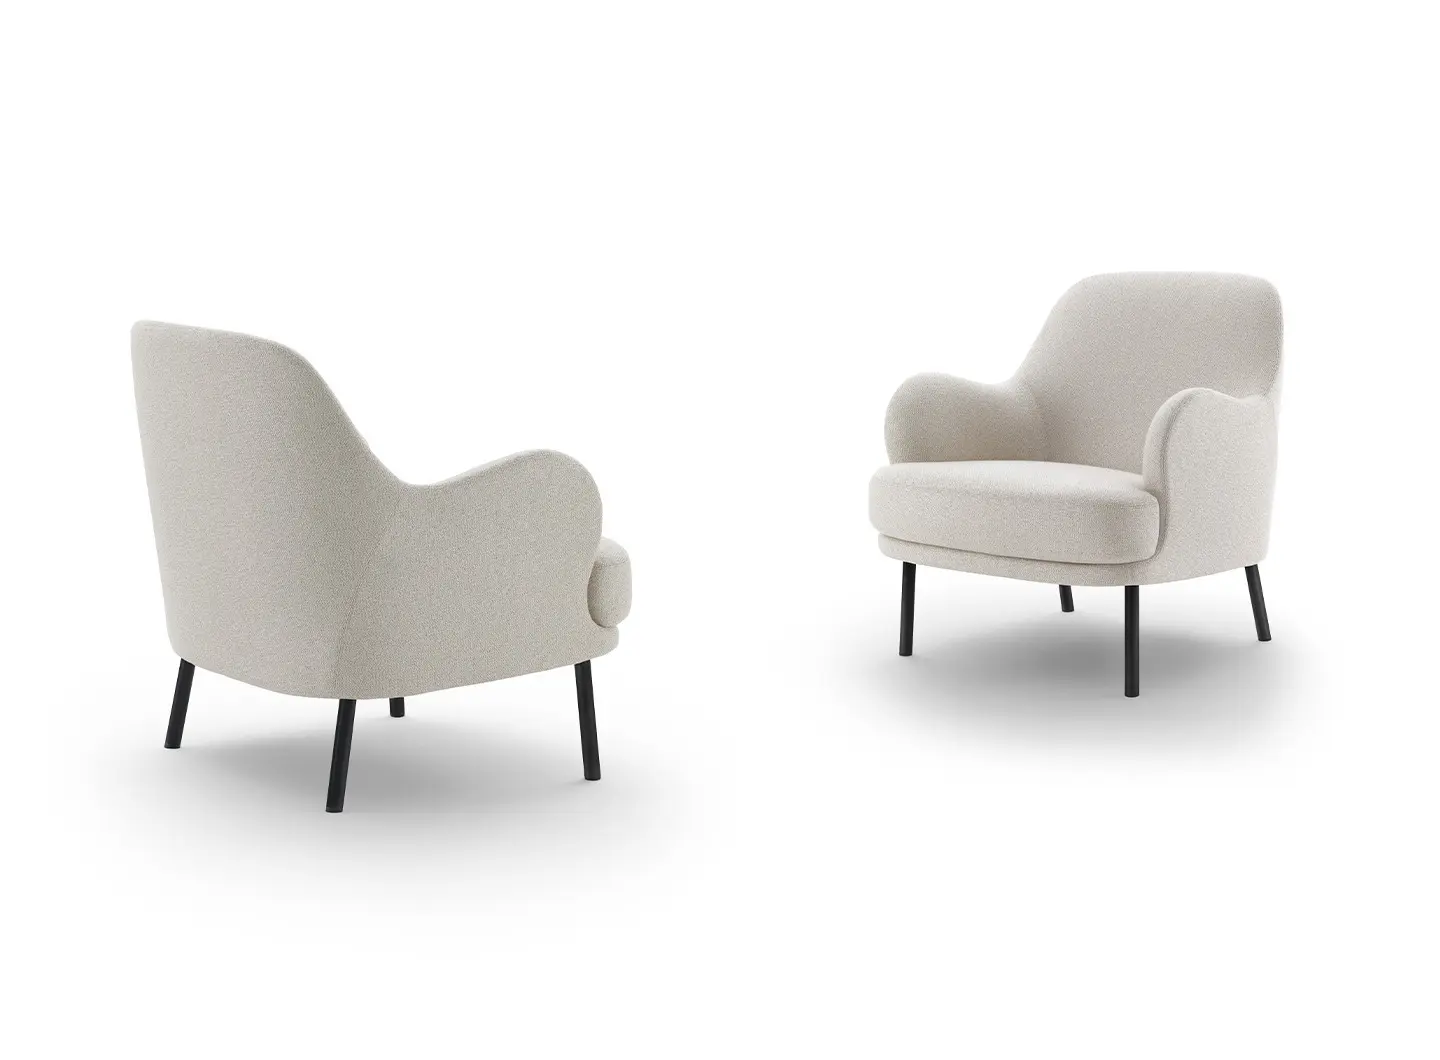 Brigitte armchair design Claesson Koivisto Rune